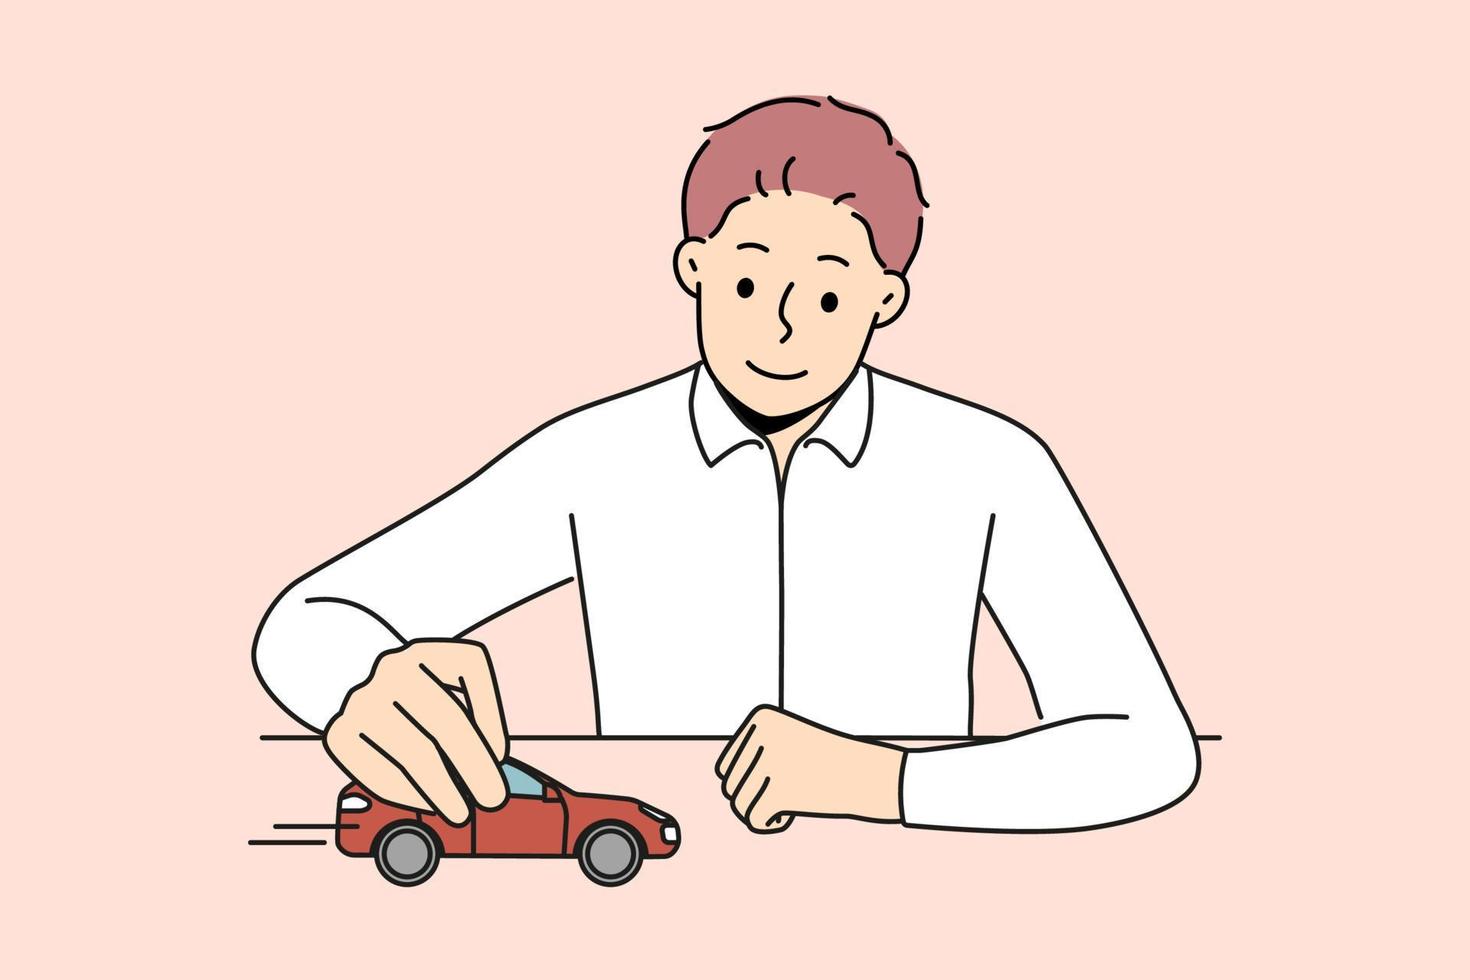 lächelnd Geschäftsmann sitzen beim Schreibtisch abspielen mit rot Wagen. zuversichtlich Mann Boss oder Vorsitzender spielen mit Automobil denken von Nächster Geschäft Umzug. Vektor Illustration.